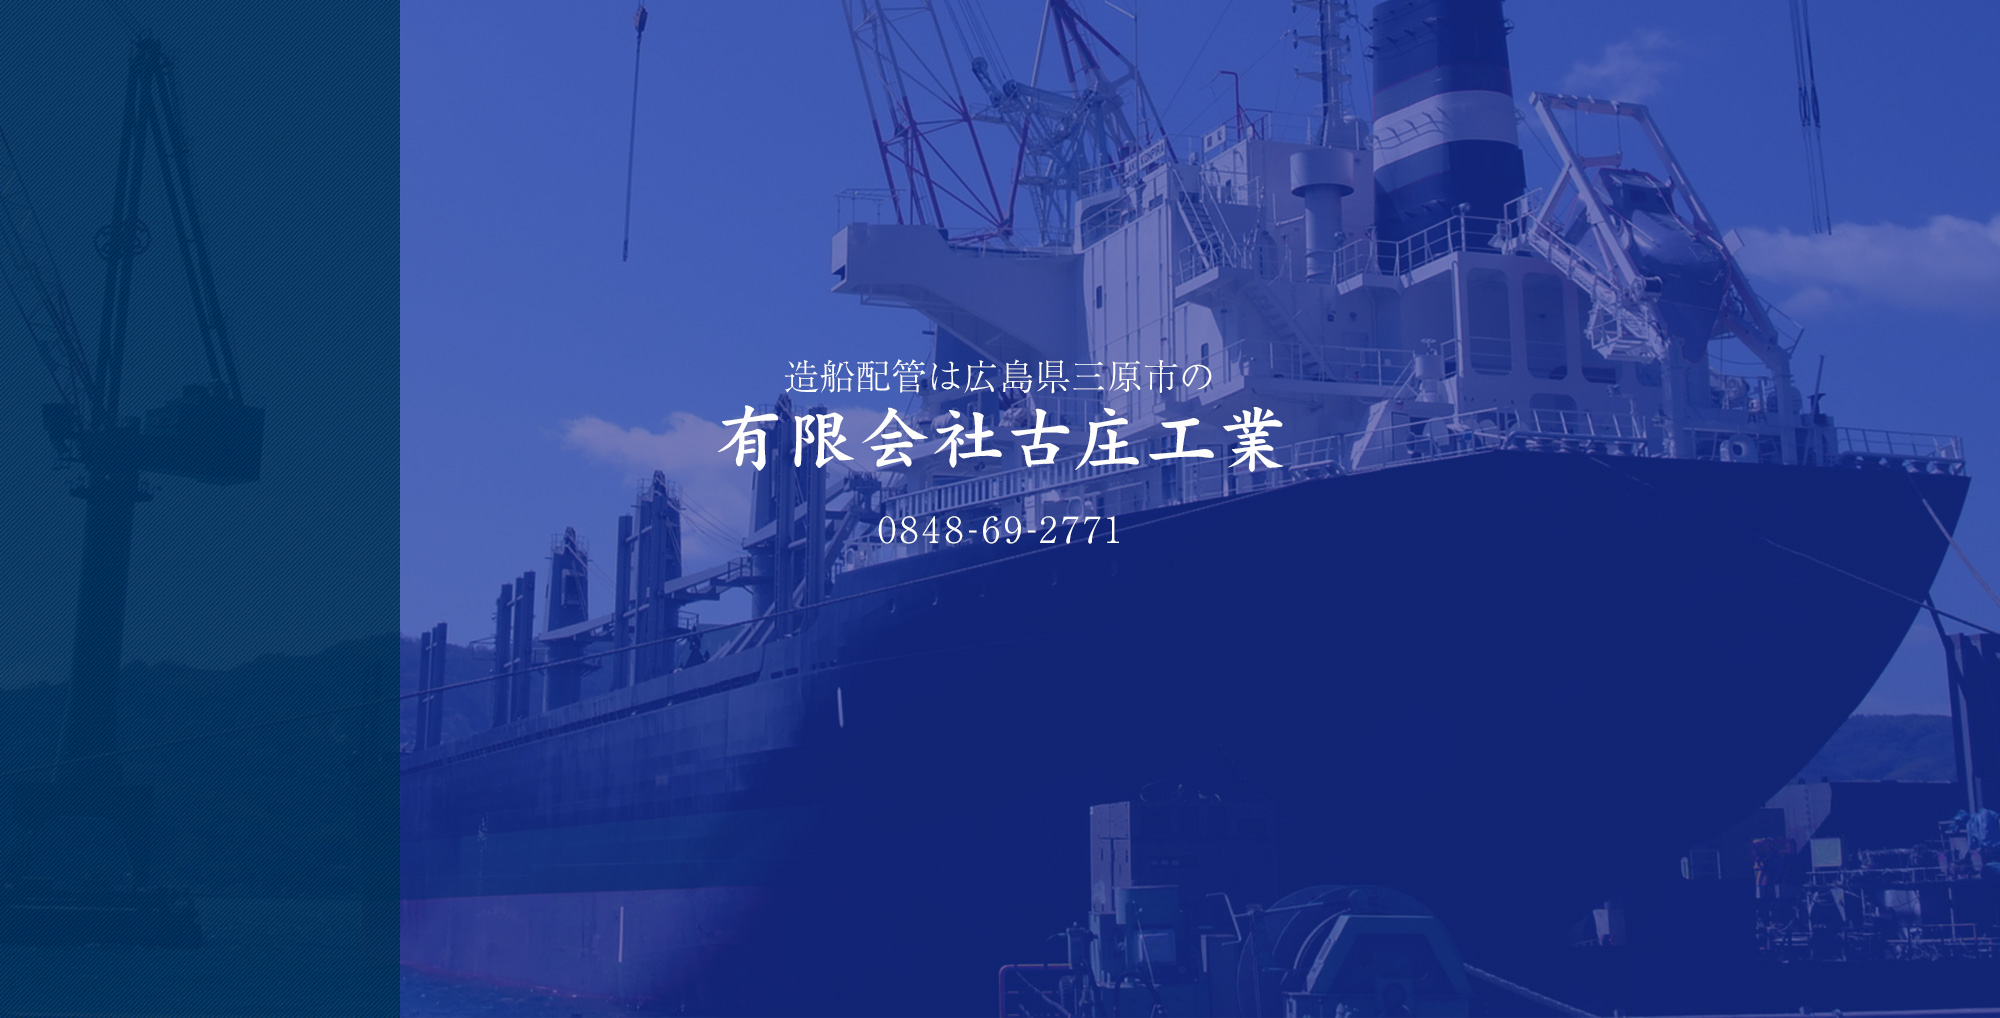 造船配管は広島県三原市の有限会社古庄工業